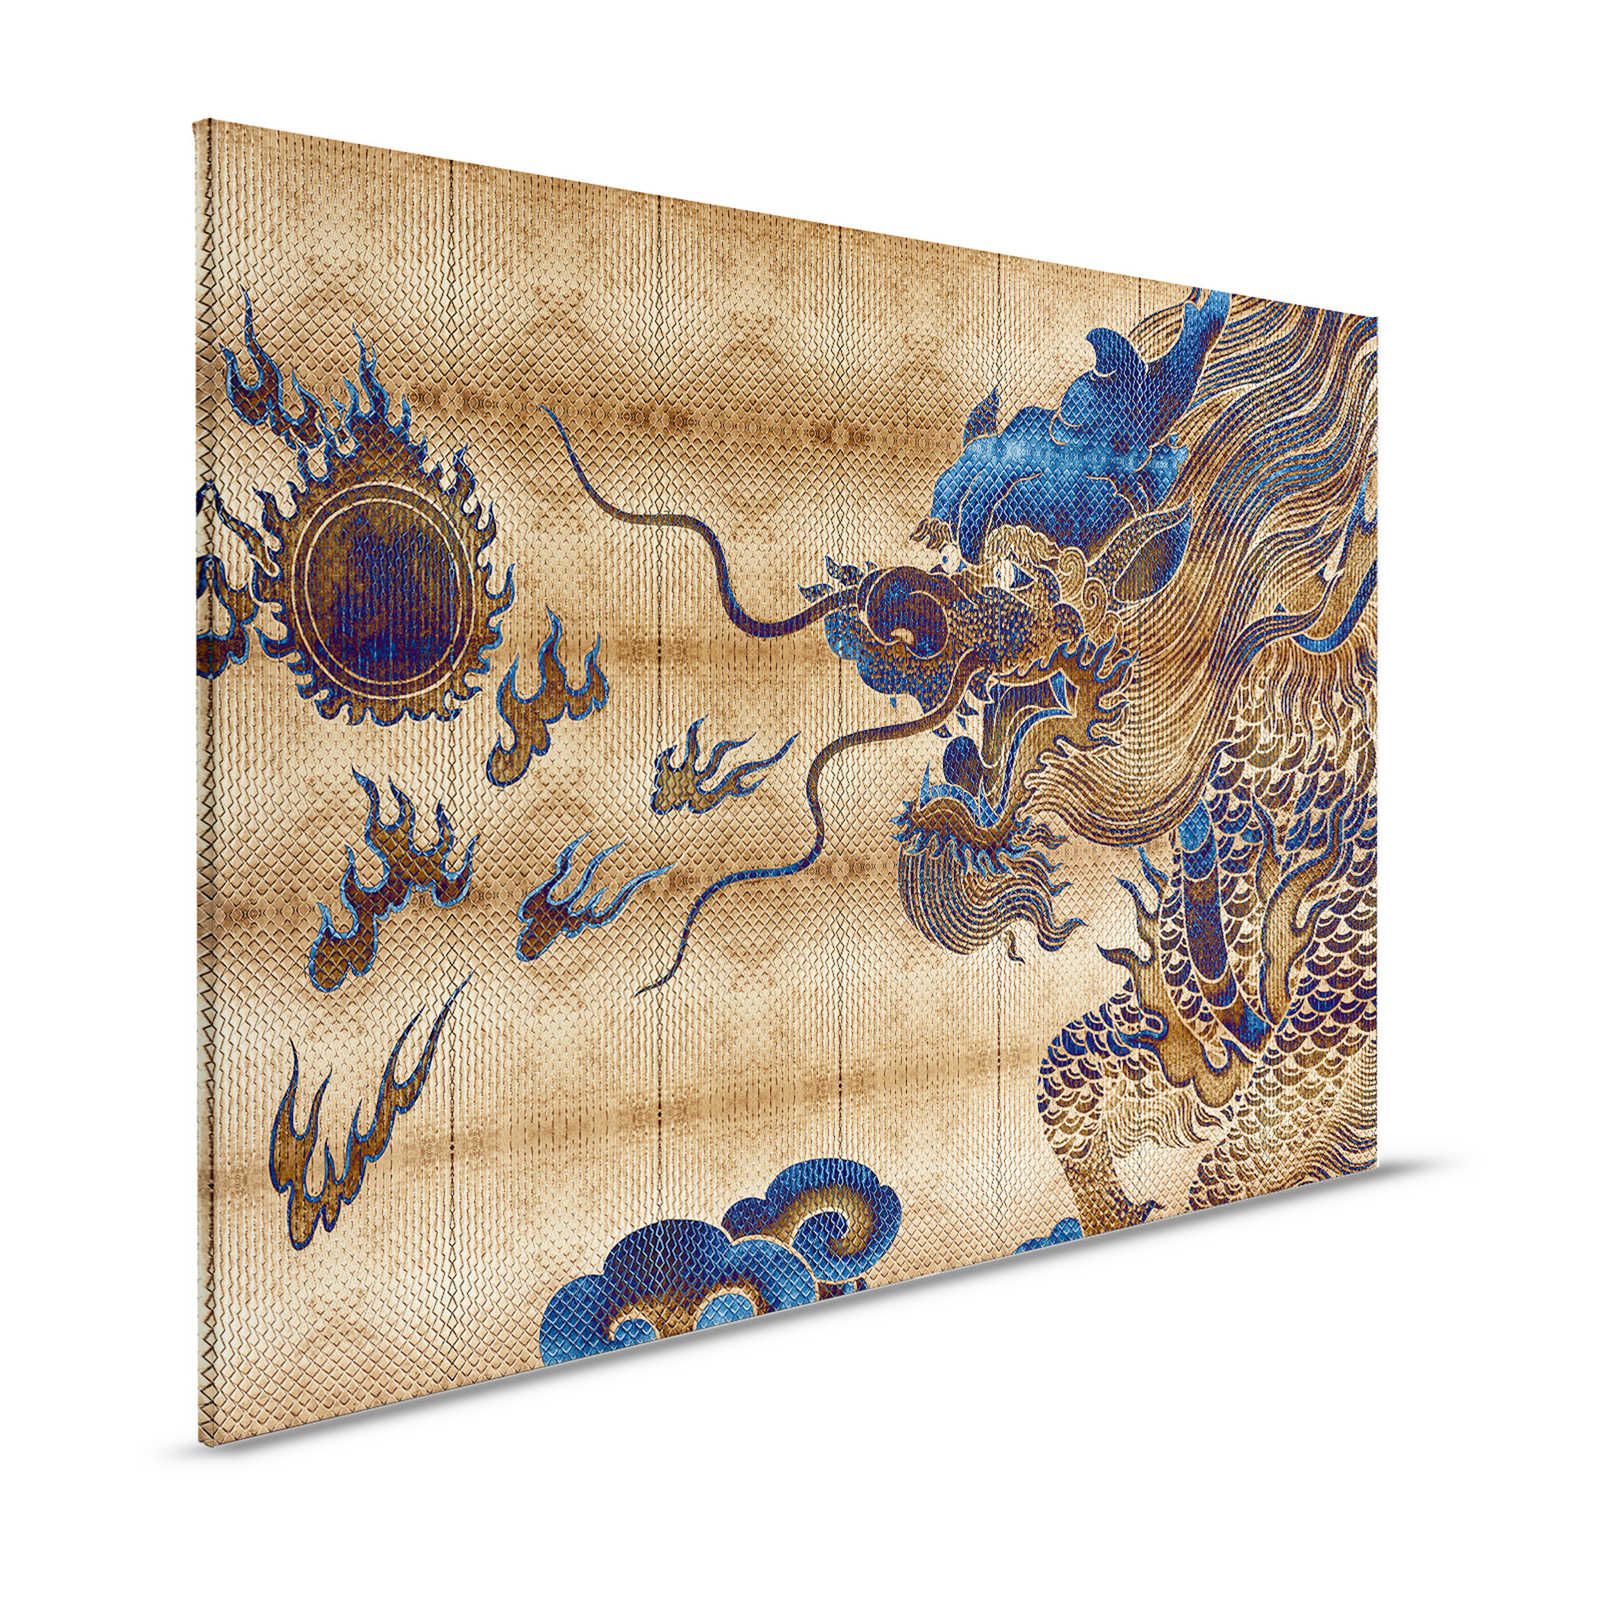 Shenzen 2 - Tableau toile Or Dragon dans le Syle asiatique - 1,20 m x 0,80 m
